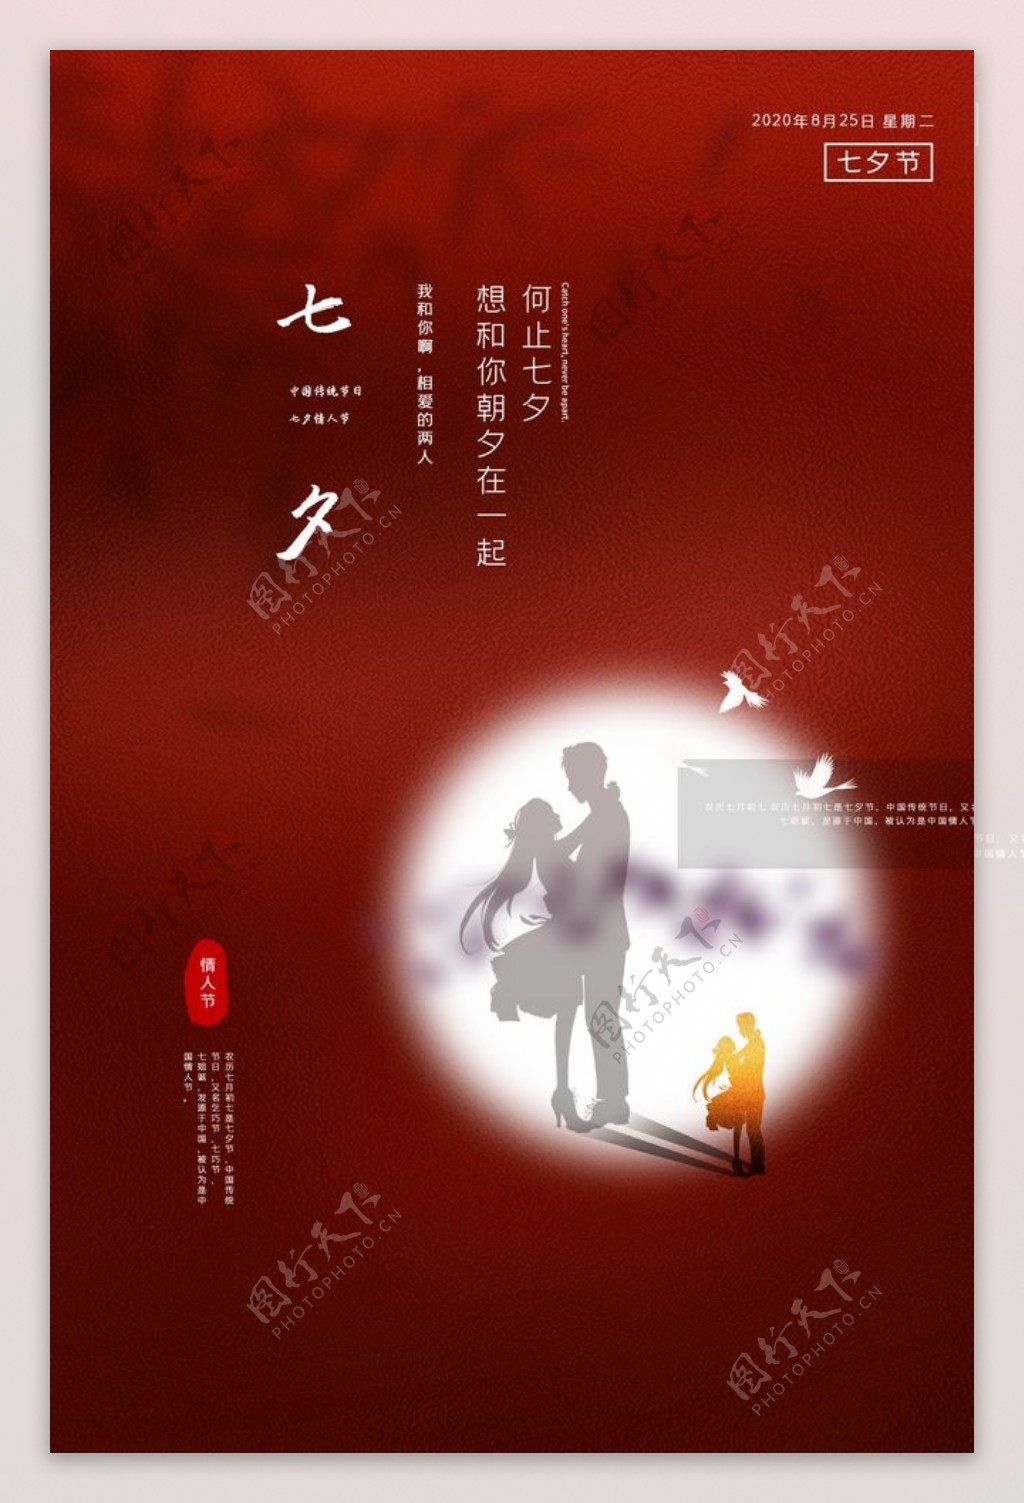 七夕传统节日宣传活动海报素材